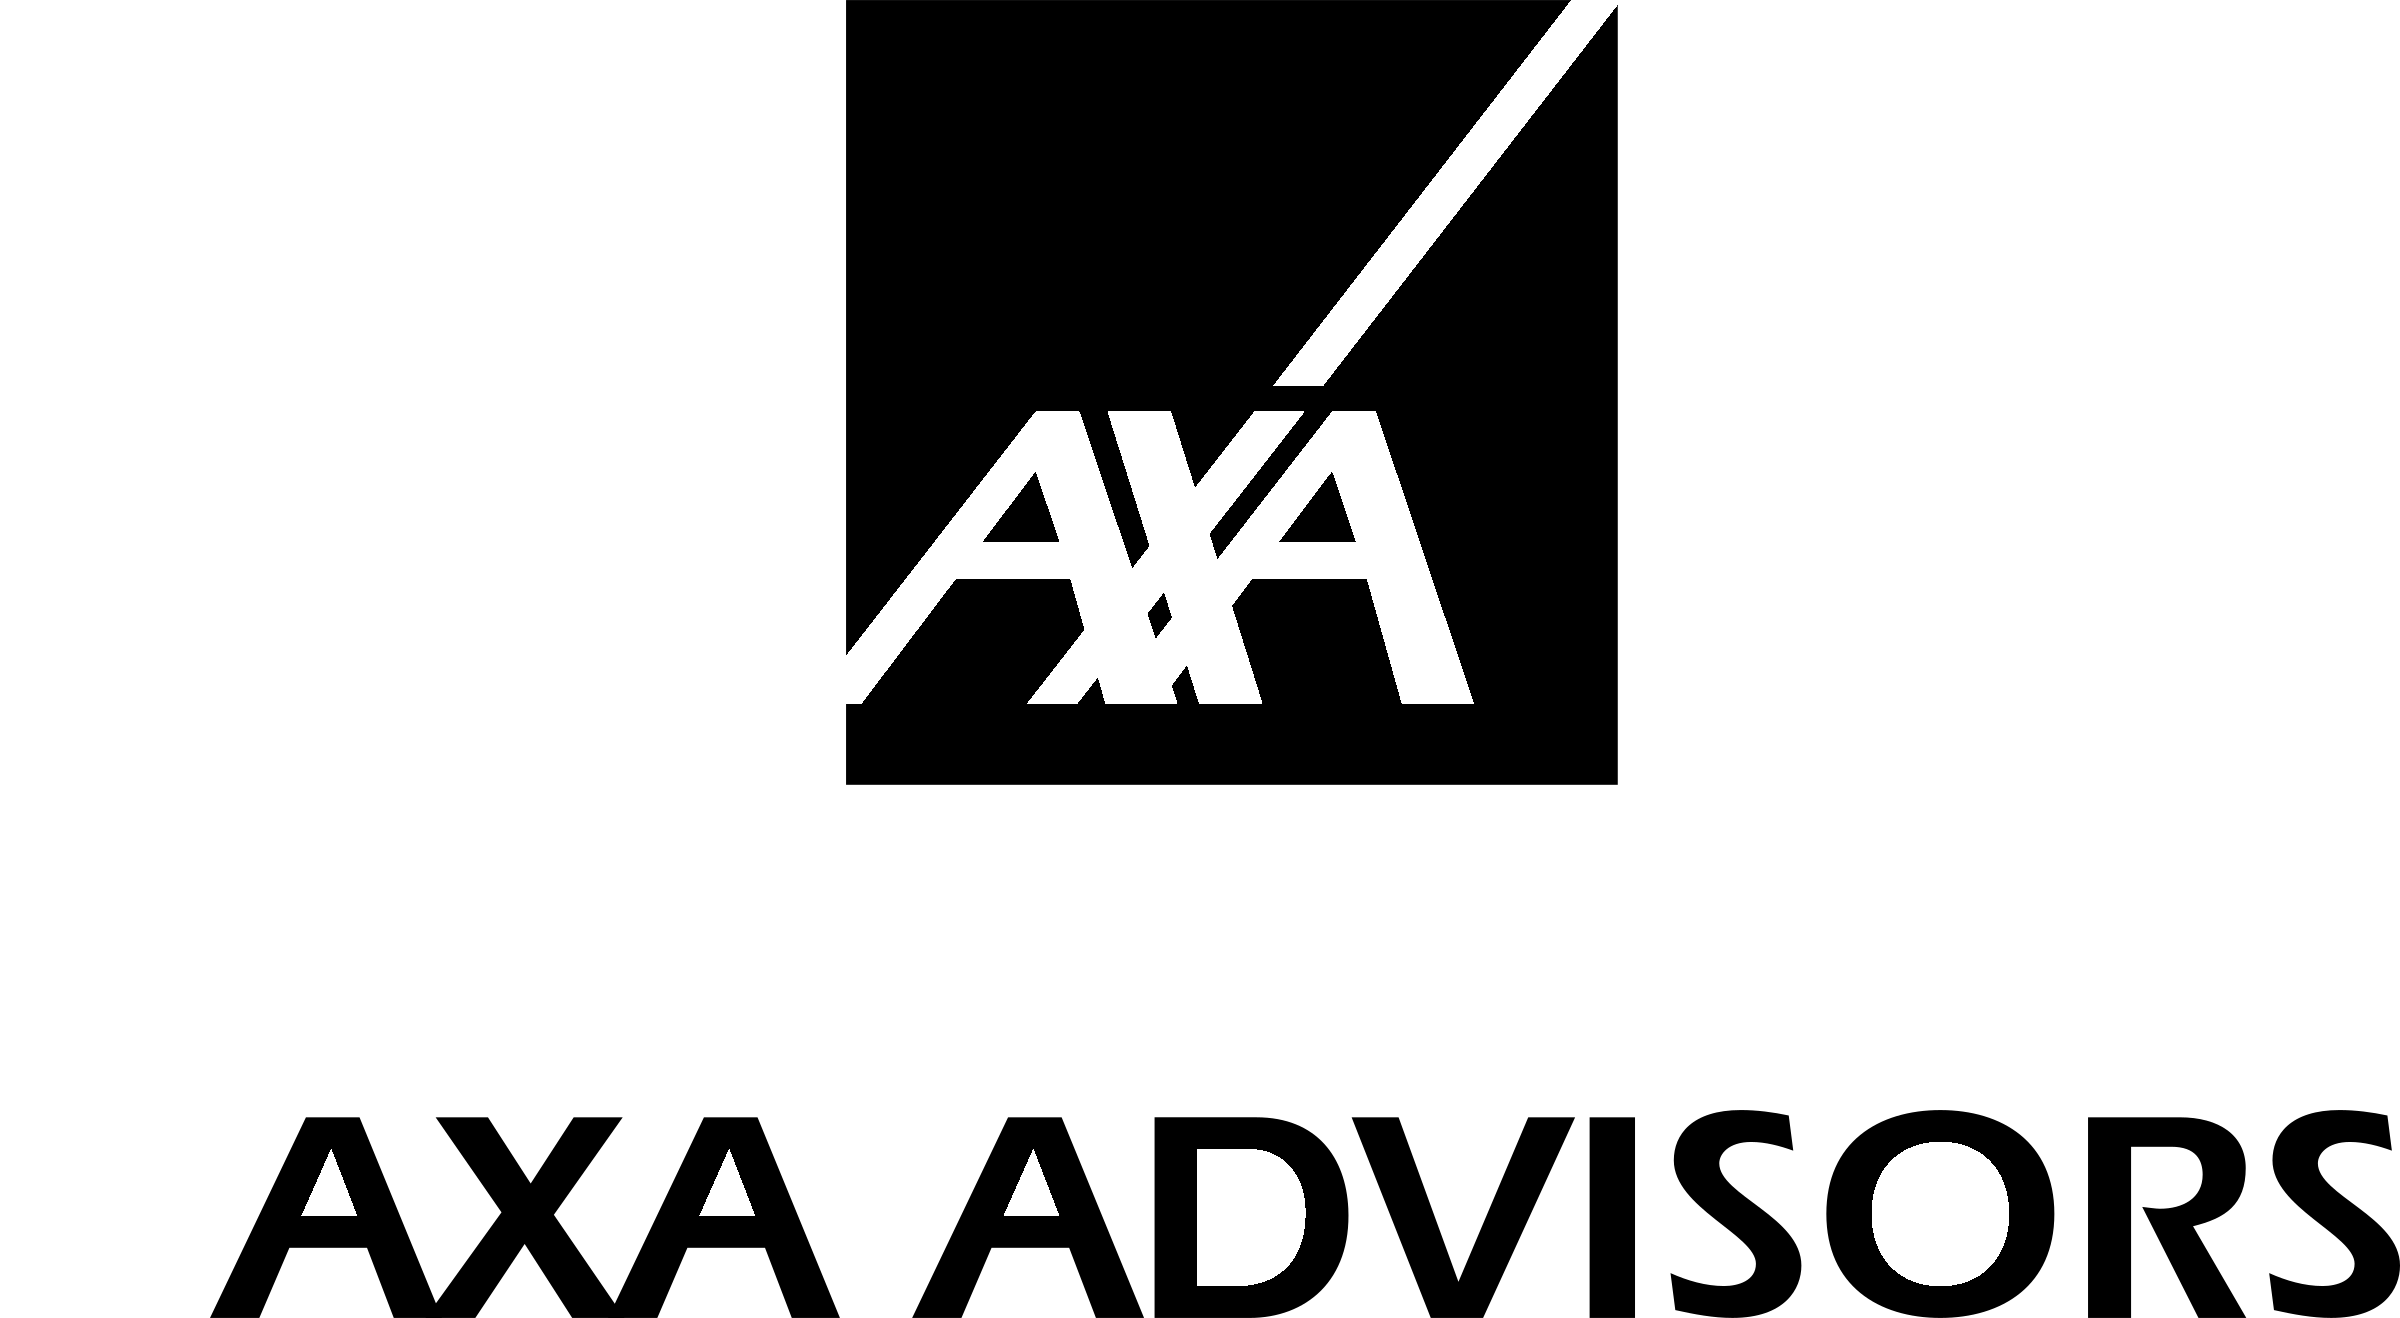 Logo Axa noir et blanc